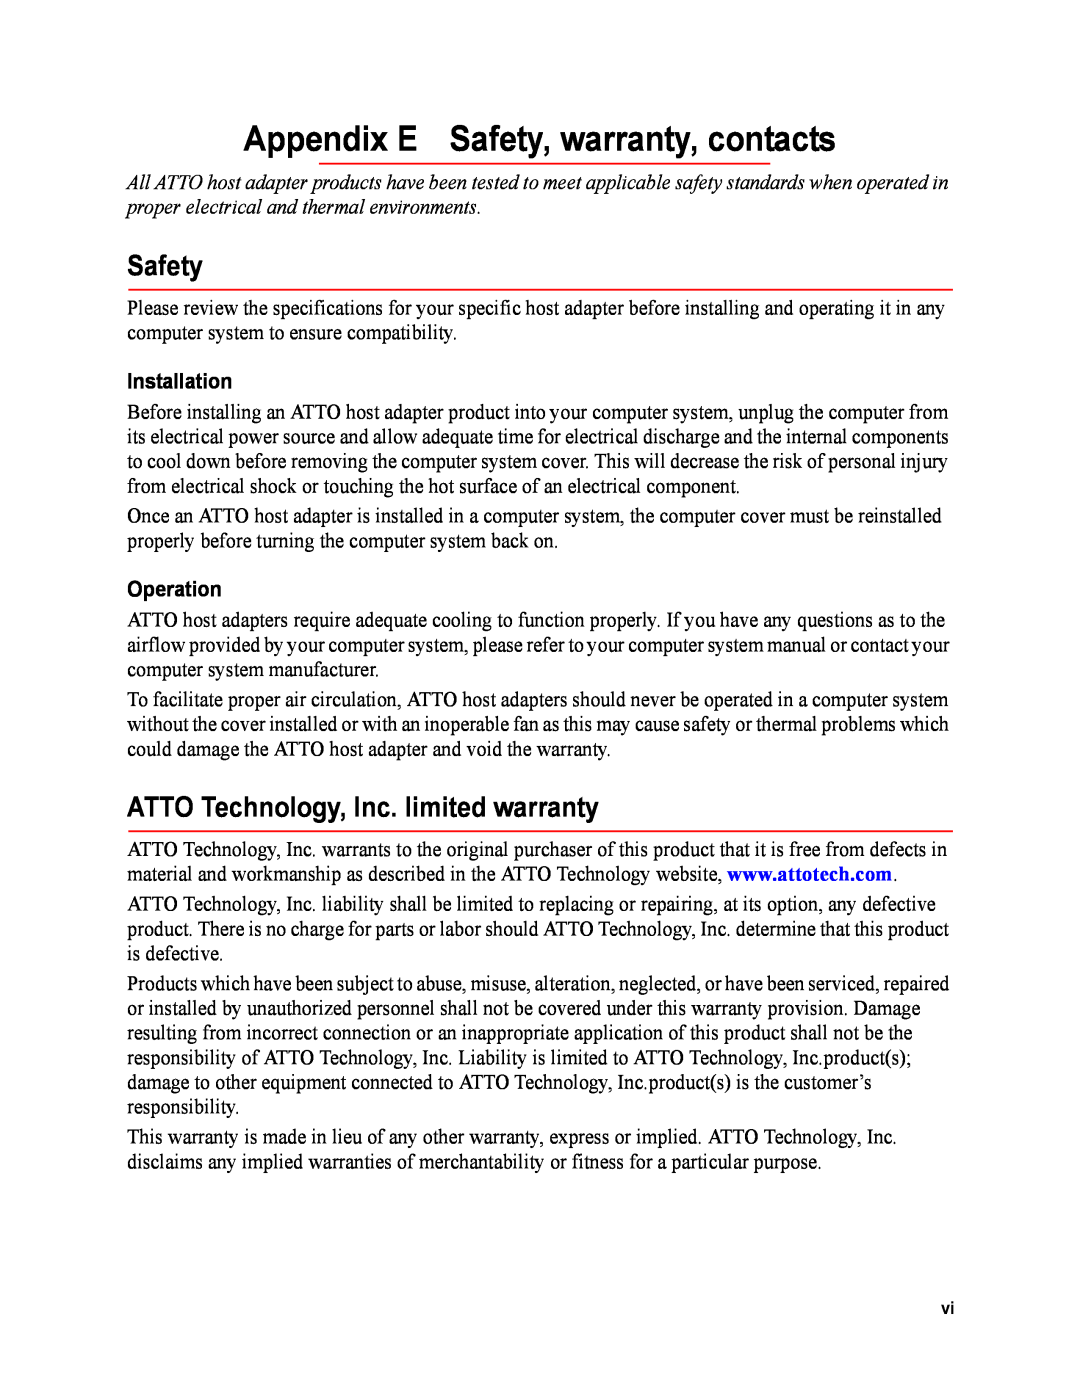 ATTO Technology FC-41ES Appendix E Safety, warranty, contacts, ATTO Technology, Inc. limited warranty, Installation 